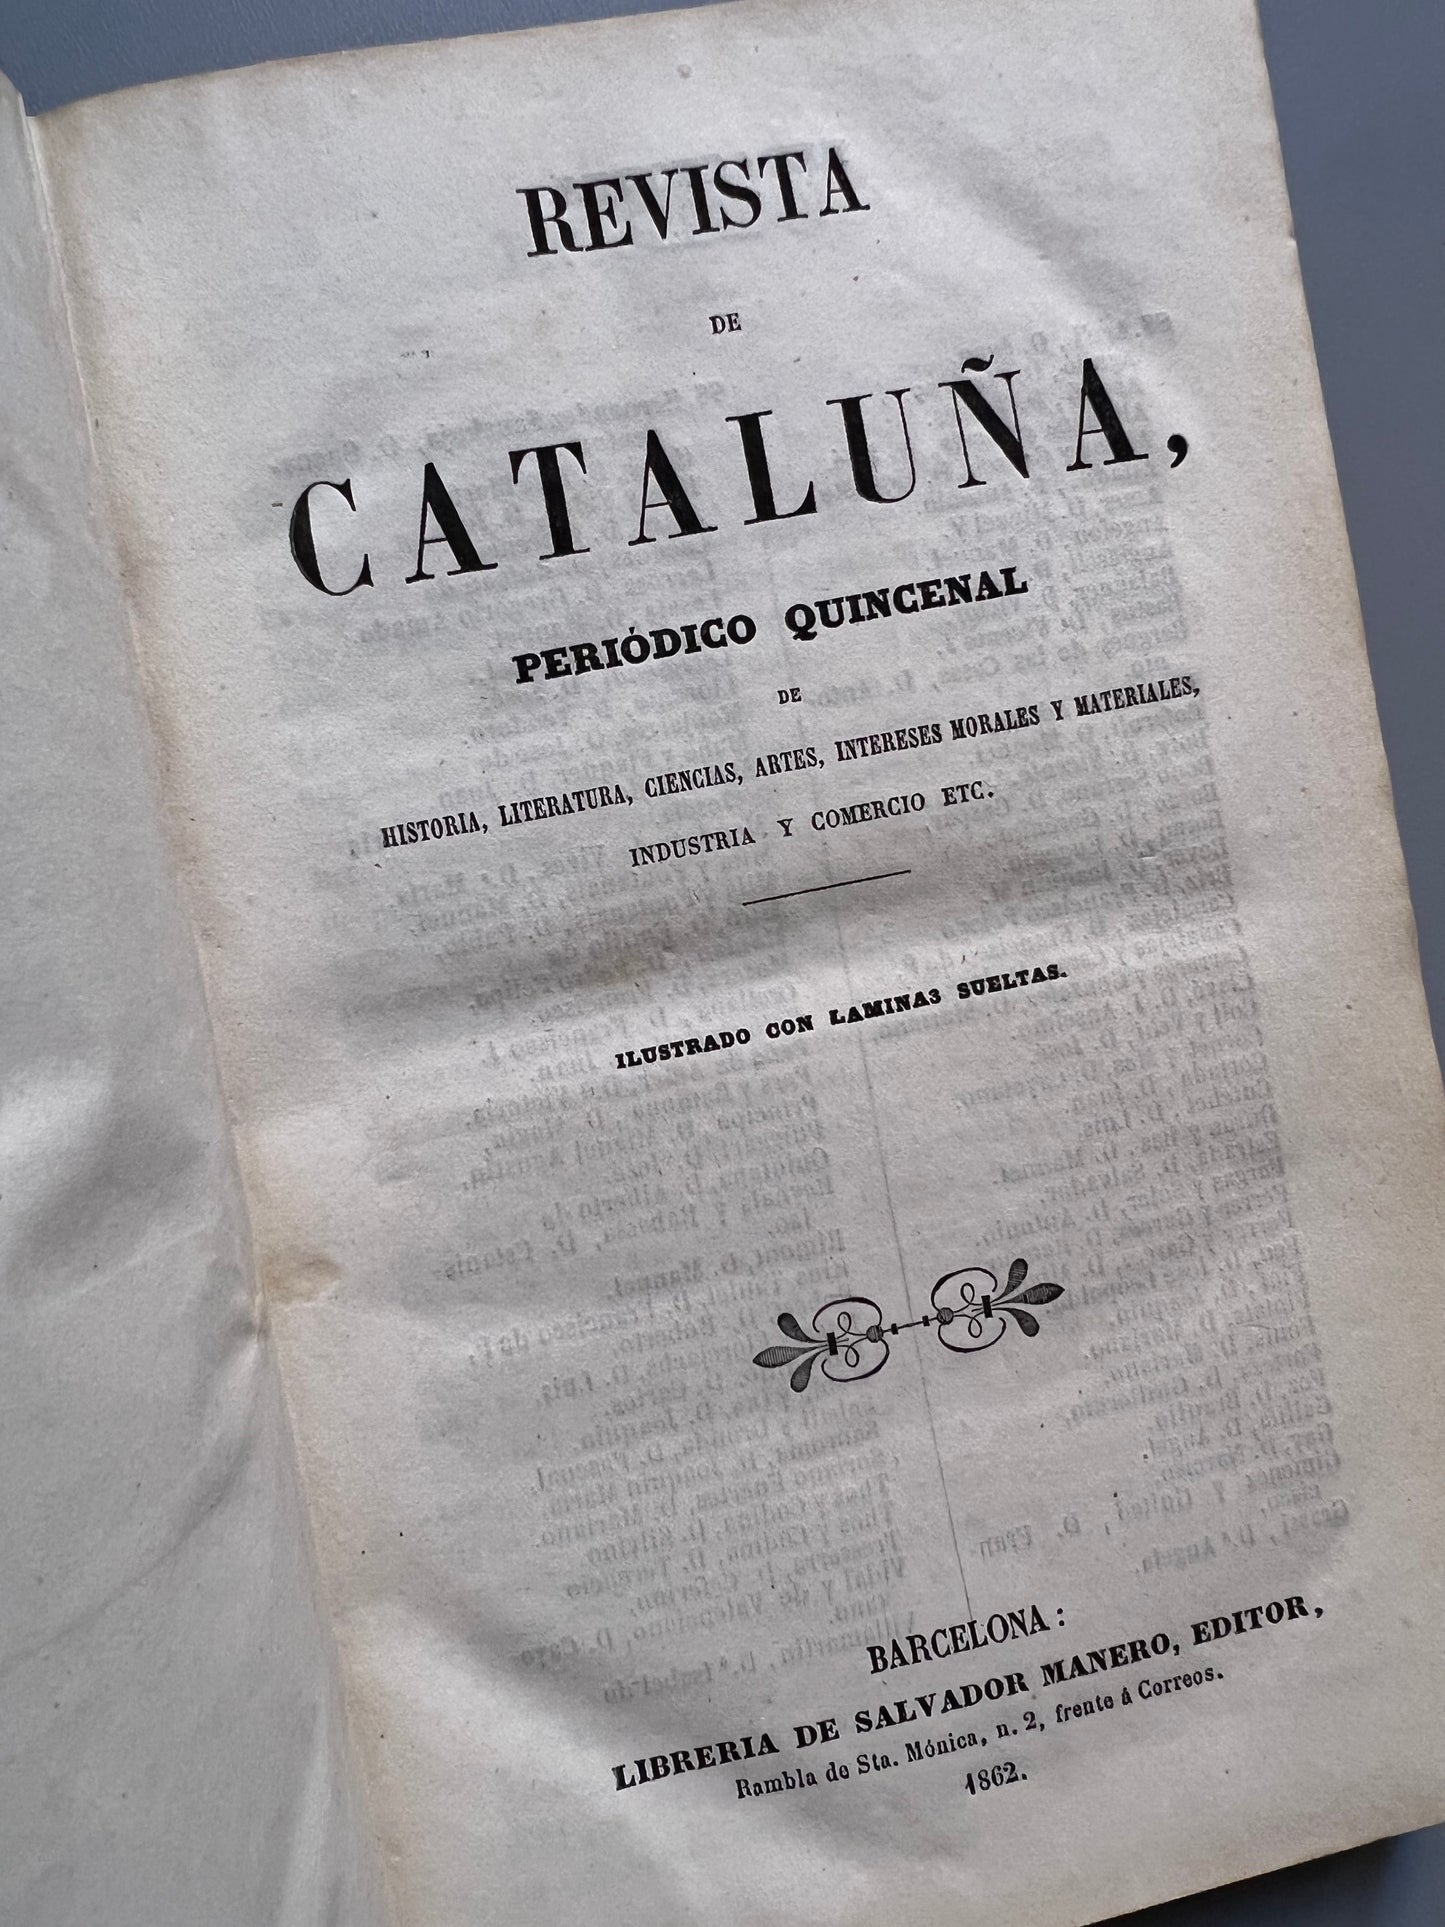 Revista de Cataluña, periodico quincenal - 1862